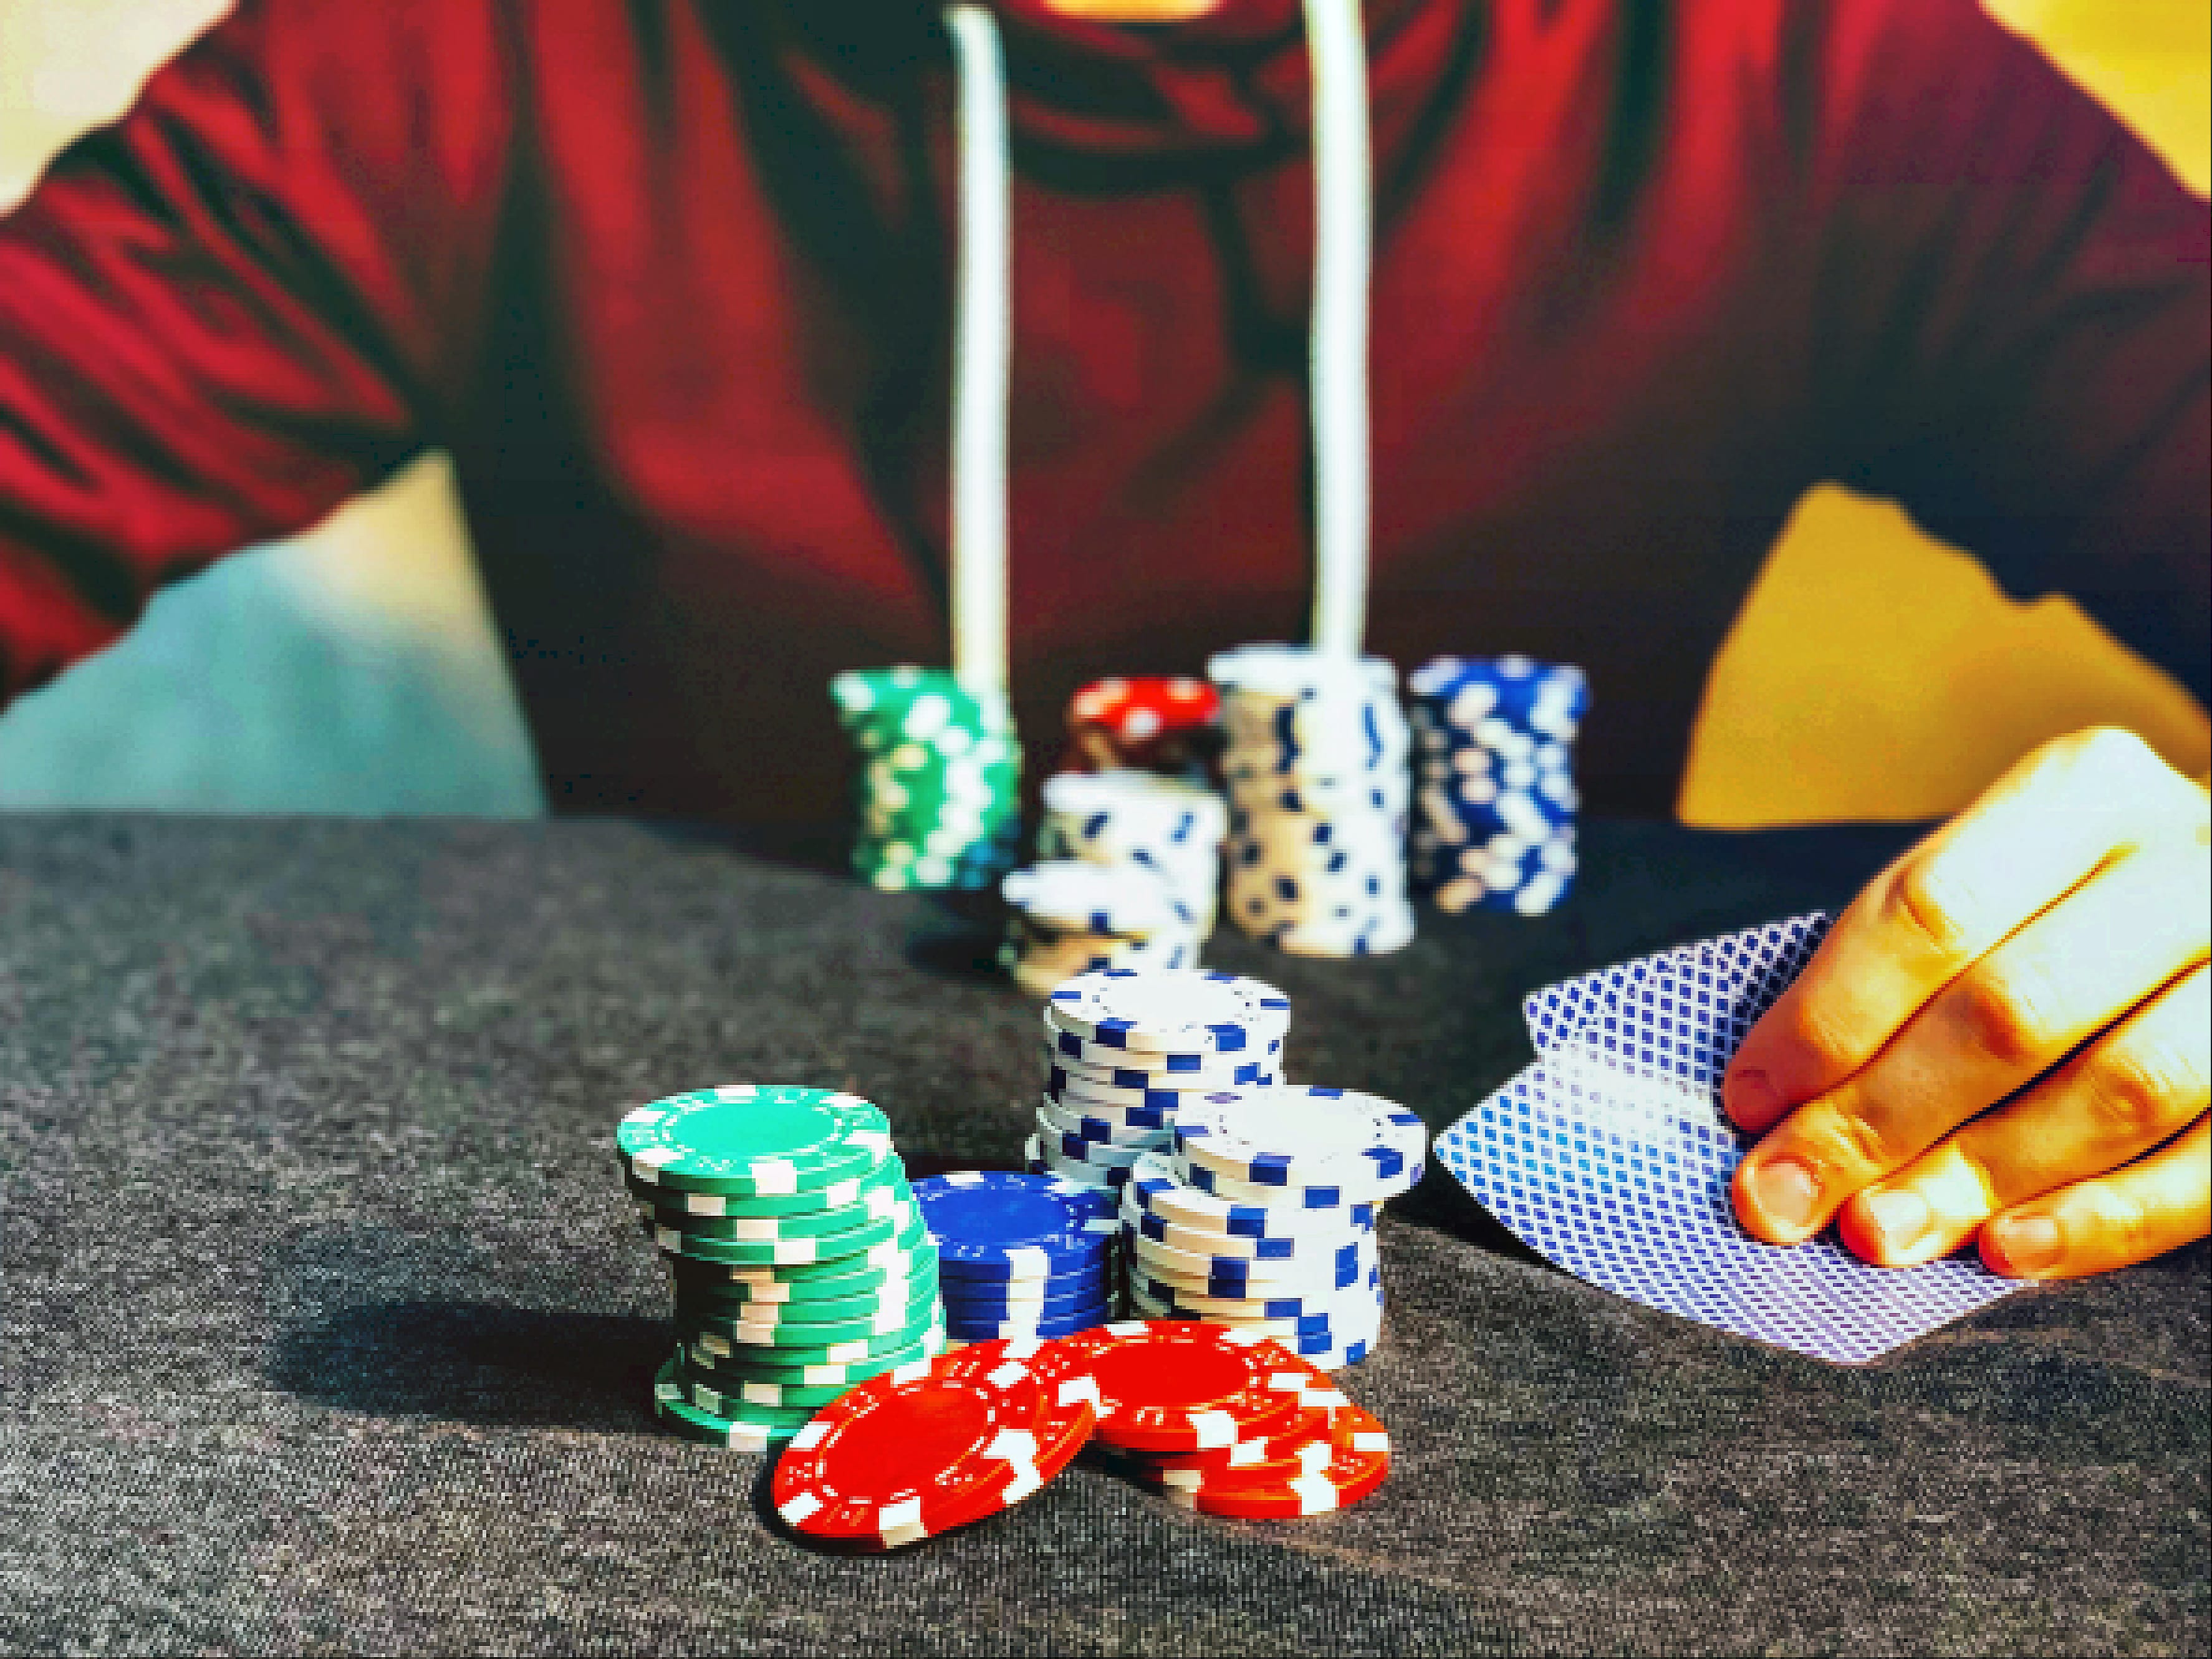 What Does the Average Gambler Lose? average gambler